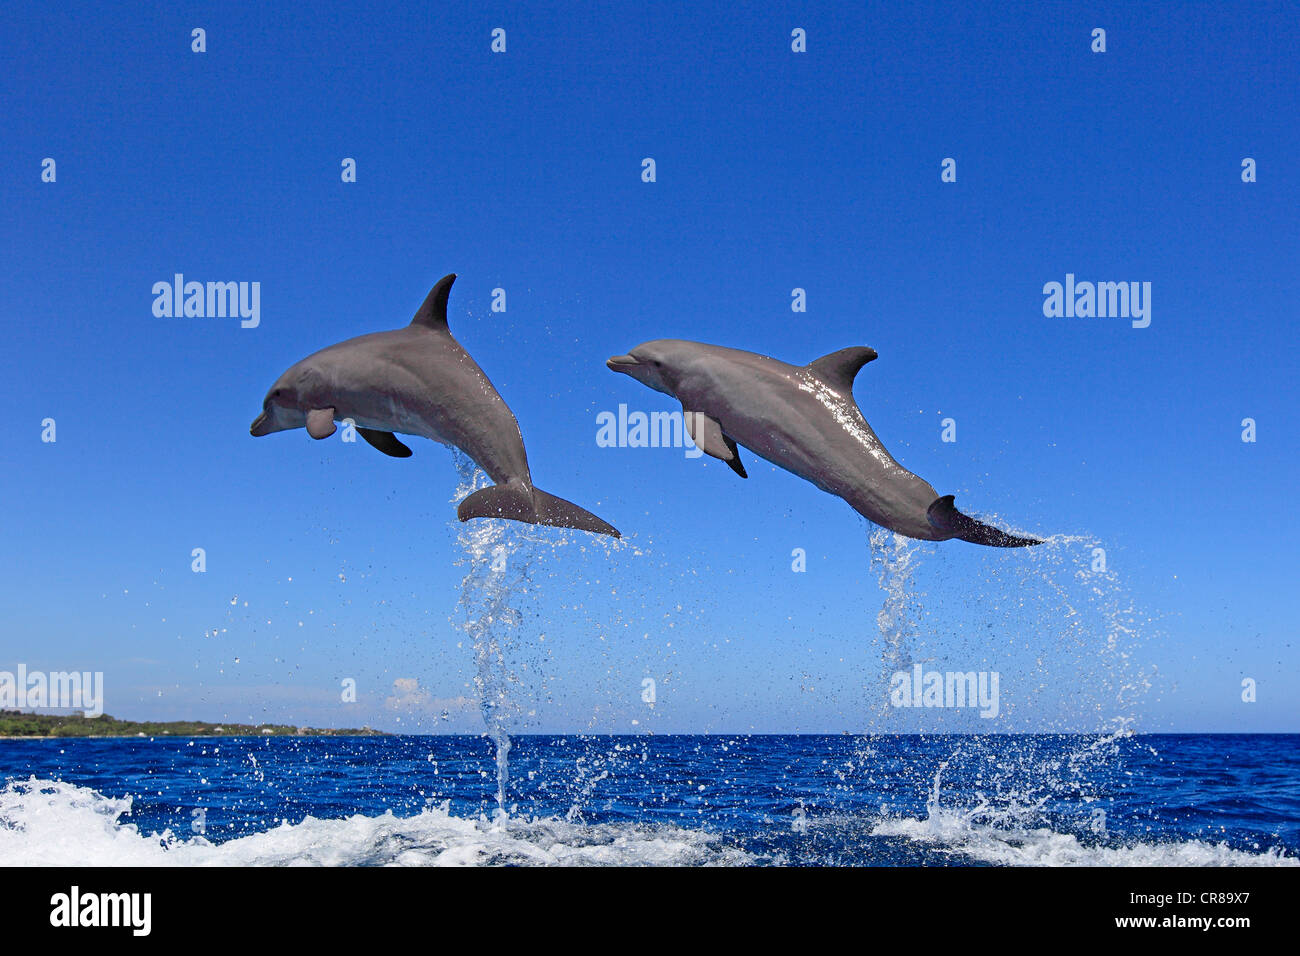 Dos delfines nariz de botella (Tursiops truncatus), adulto, saltando fuera del mar, Roatán, Honduras, El Caribe, América Central Foto de stock